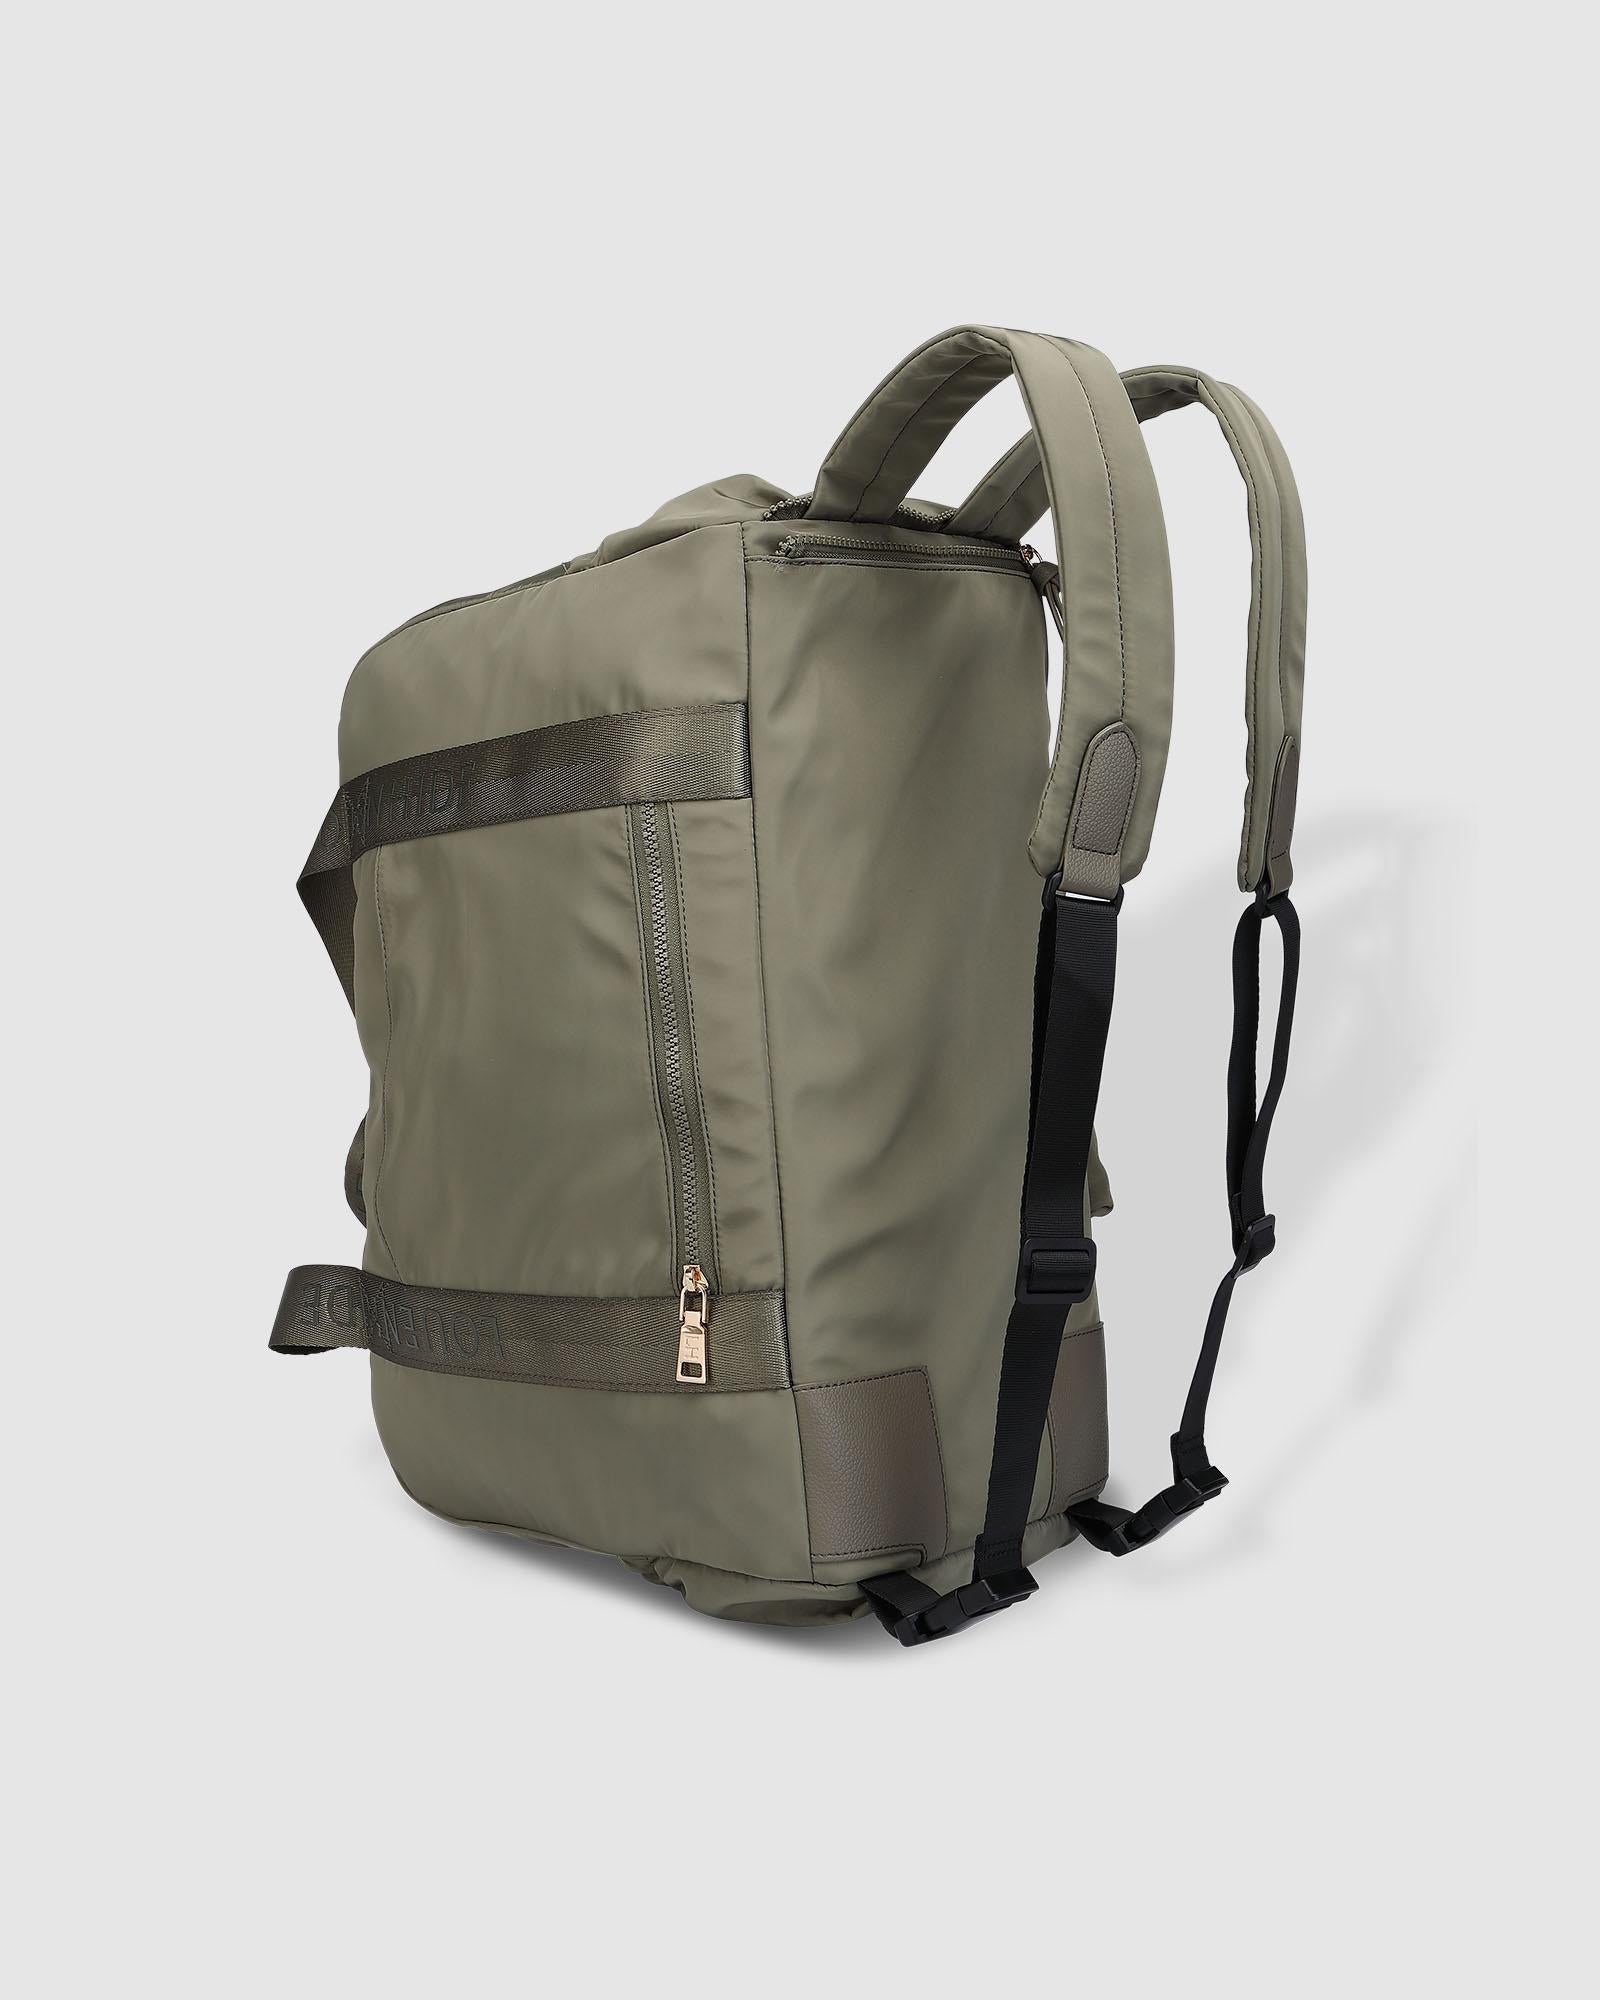 Buy The Jenn Nylon Travel Bag Online – Louenhide